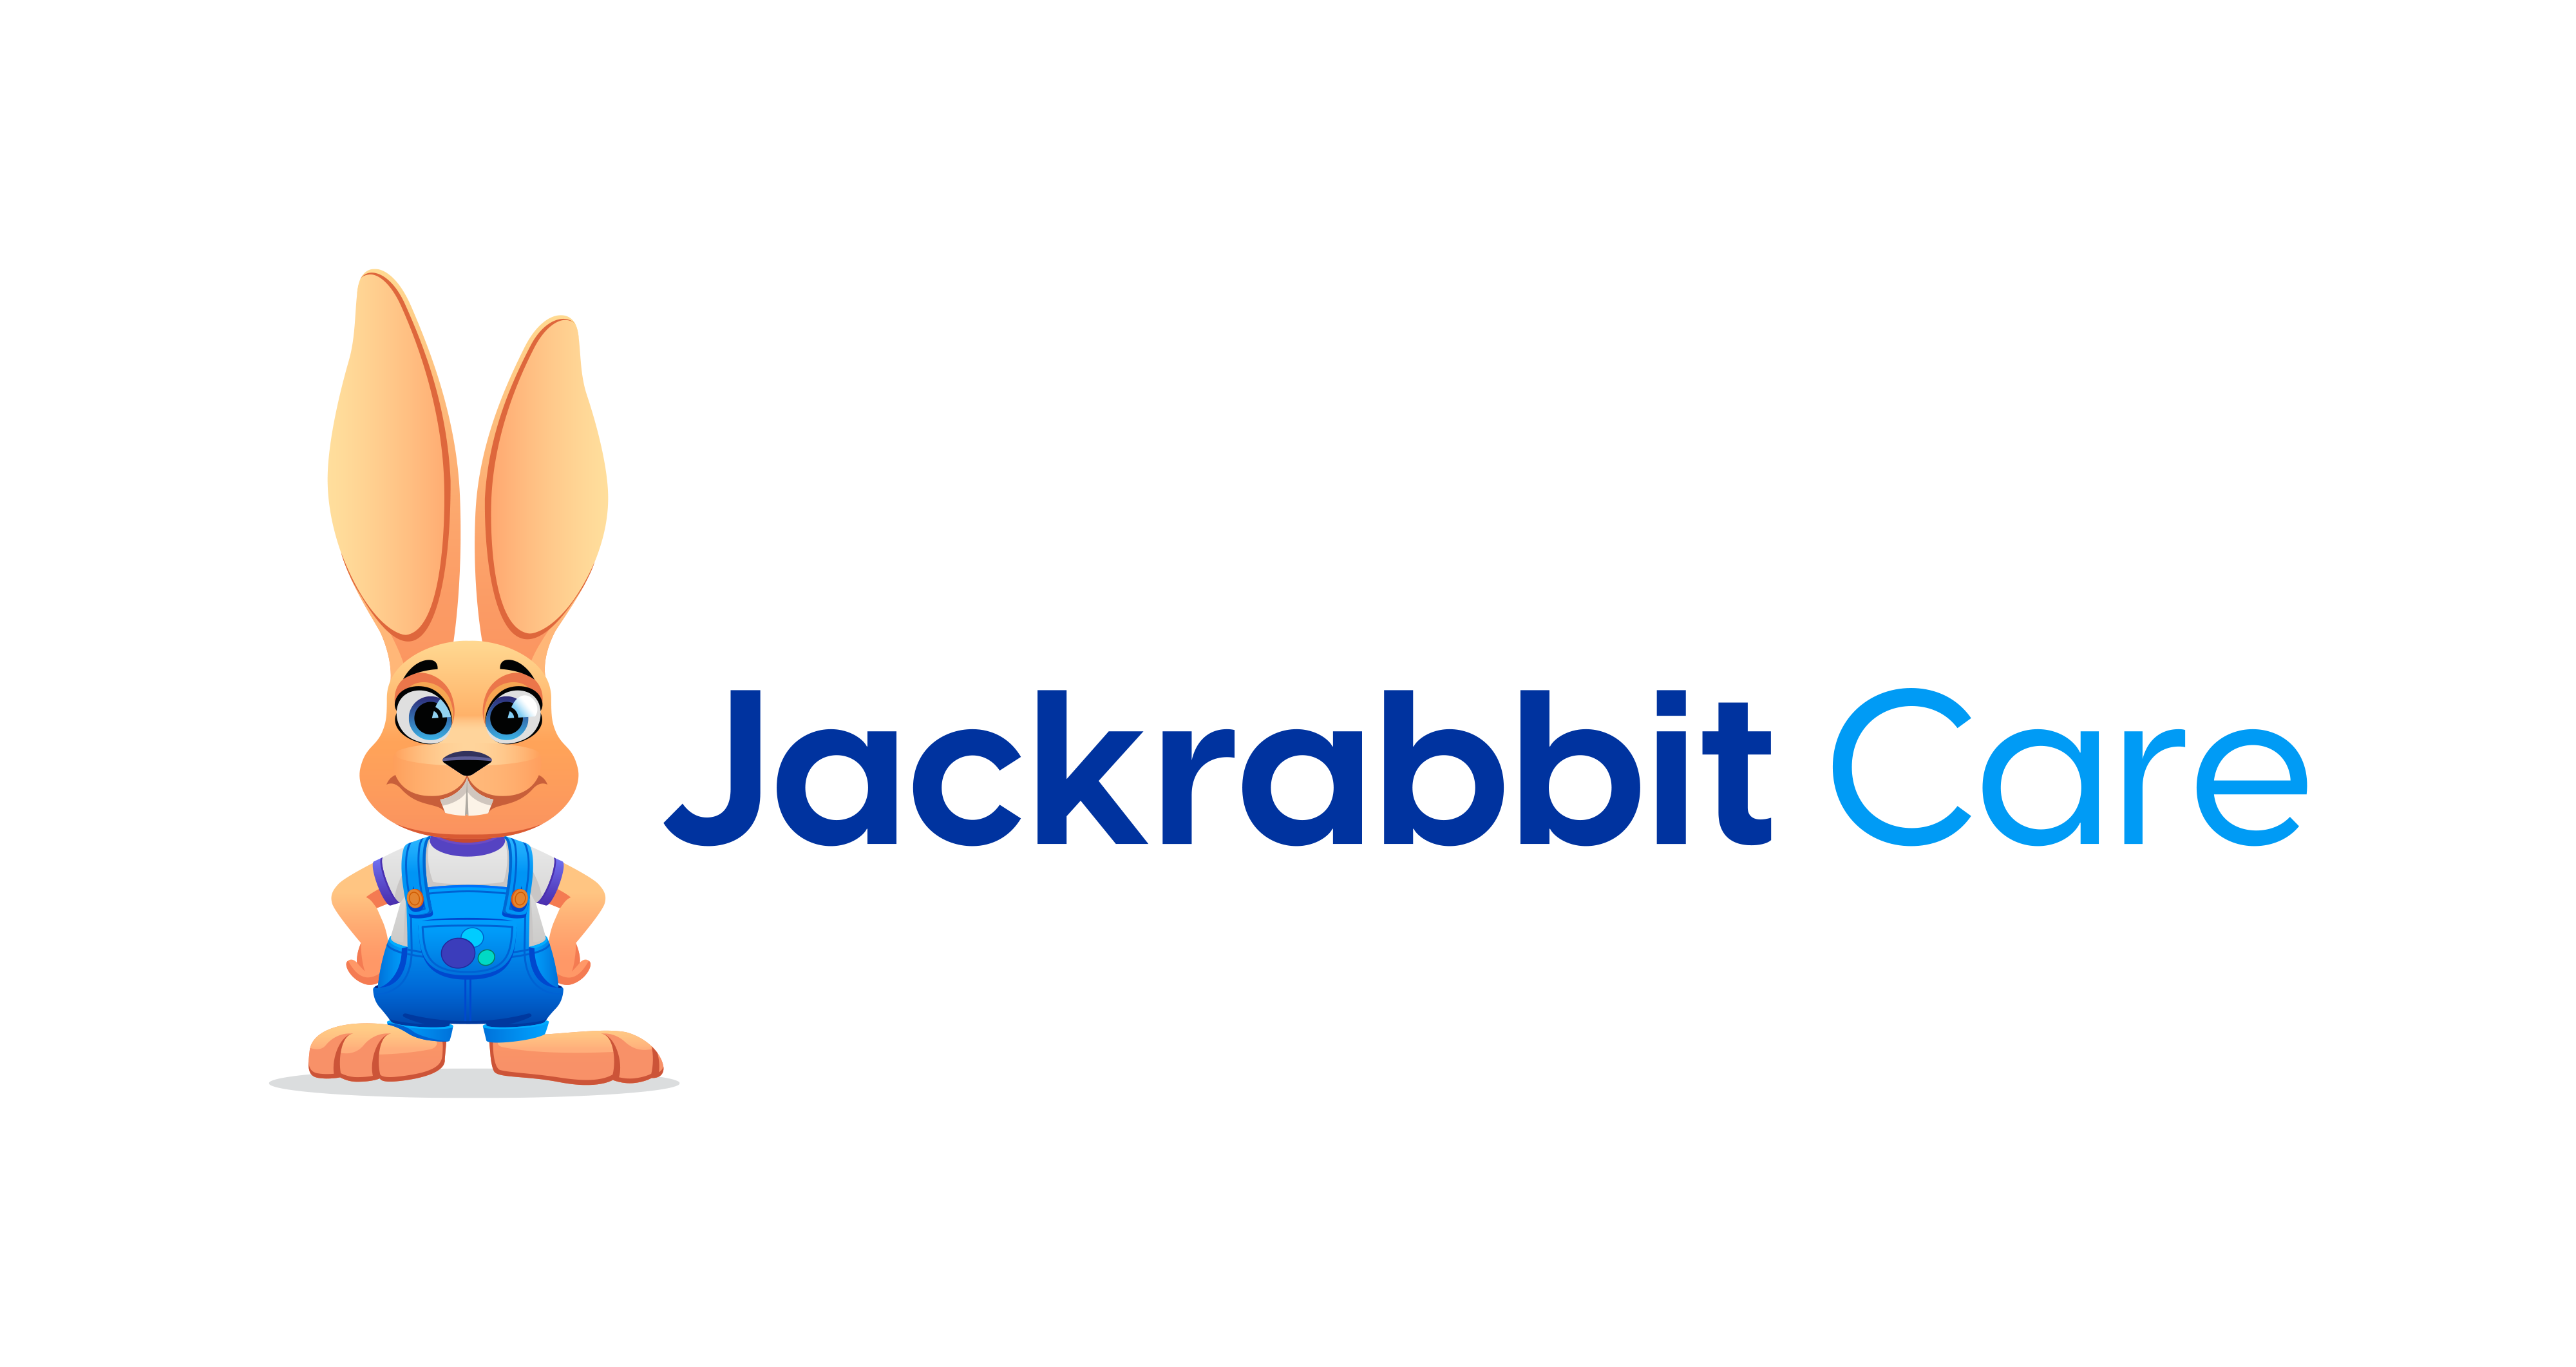 Jackrabbit Care 2D bunny logo